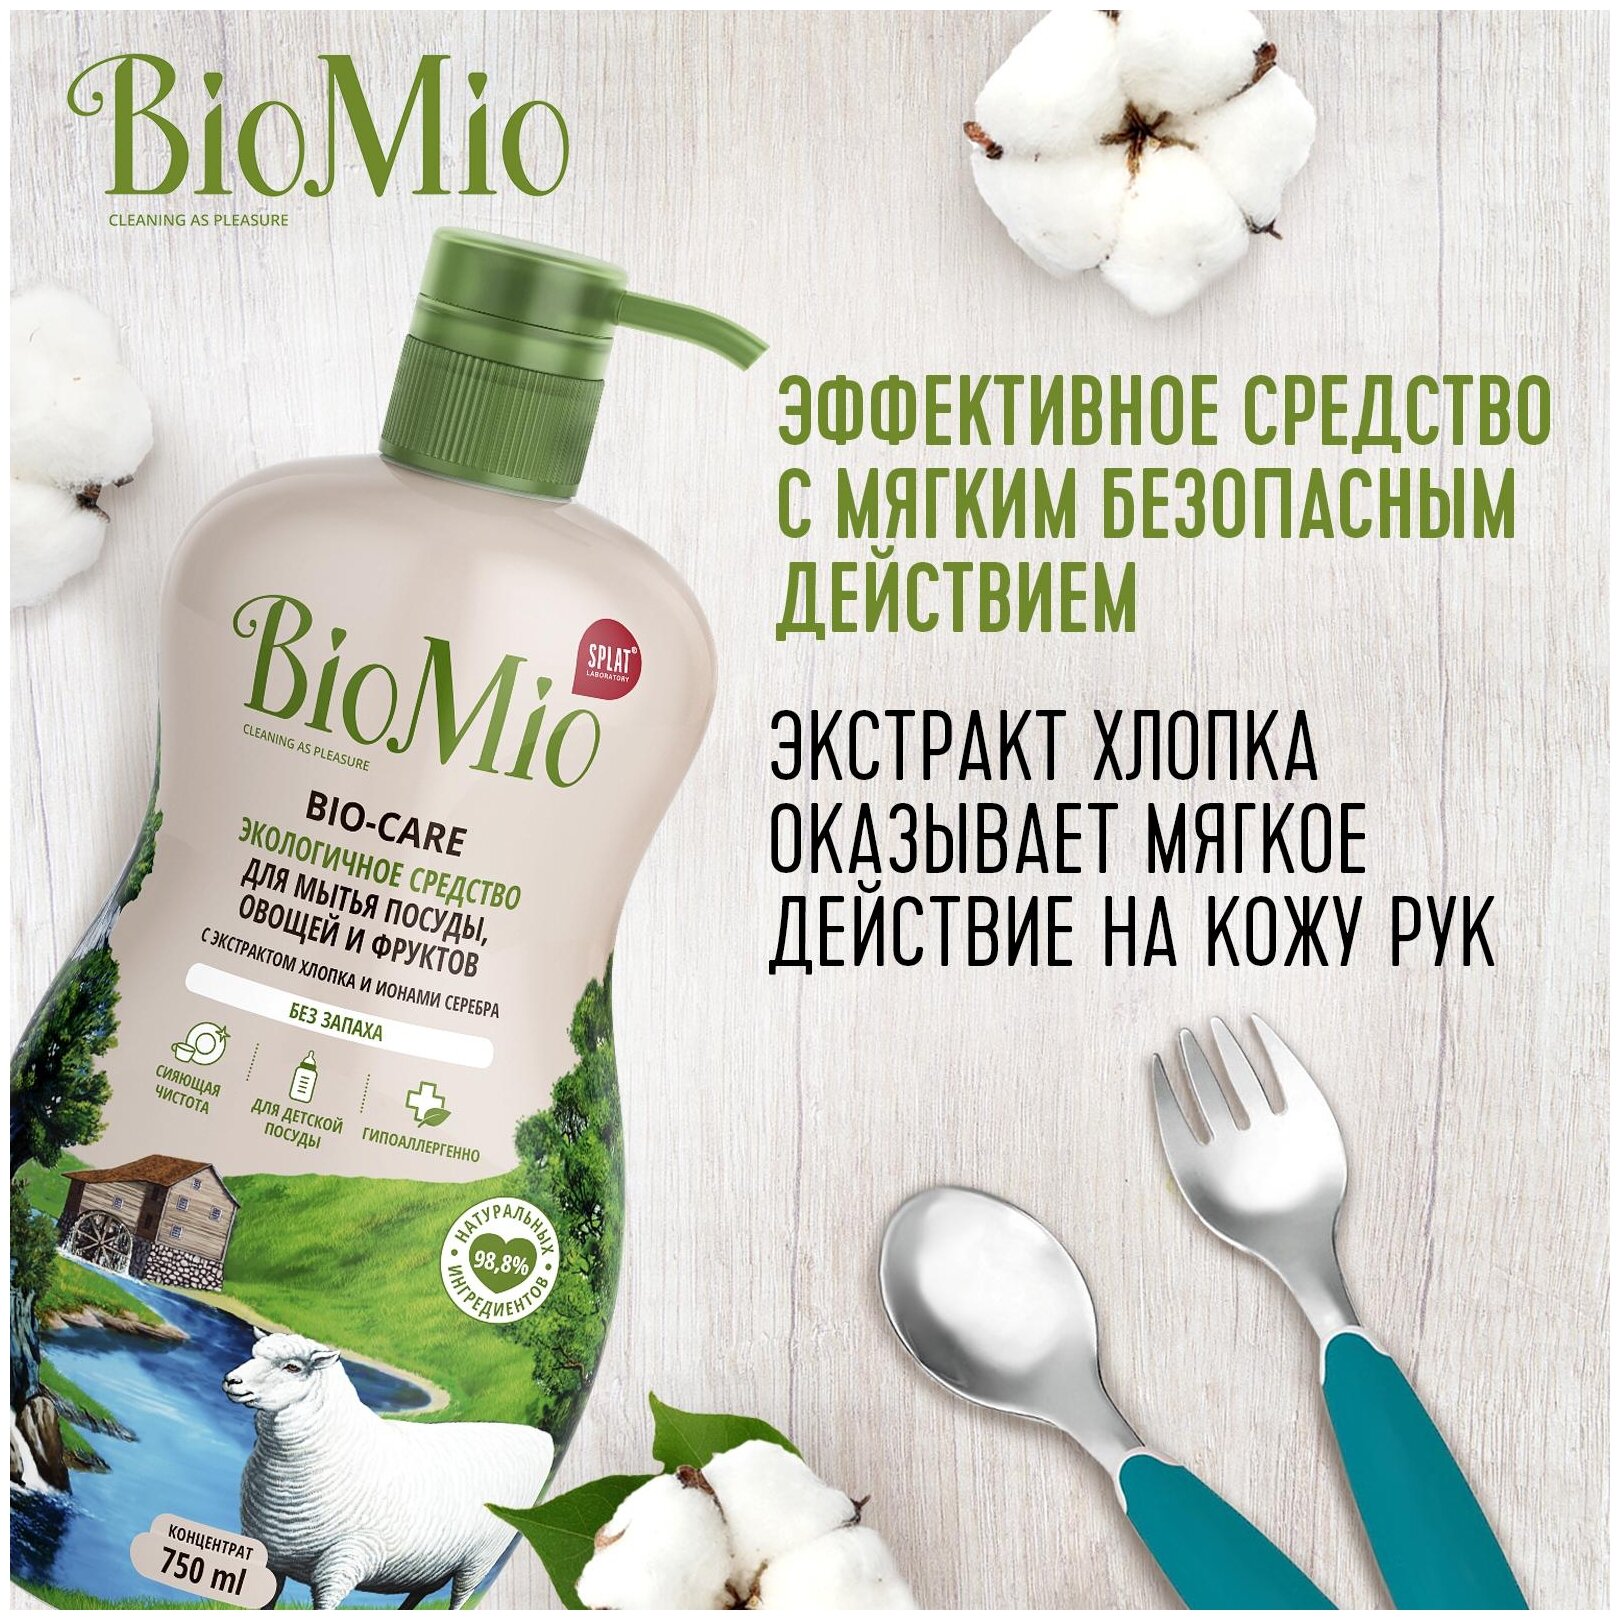 Средство BioMio, Bio-Care д/мытья посуды, овощей и фруктов, концентрат, без запаха 450 мл - фото №4